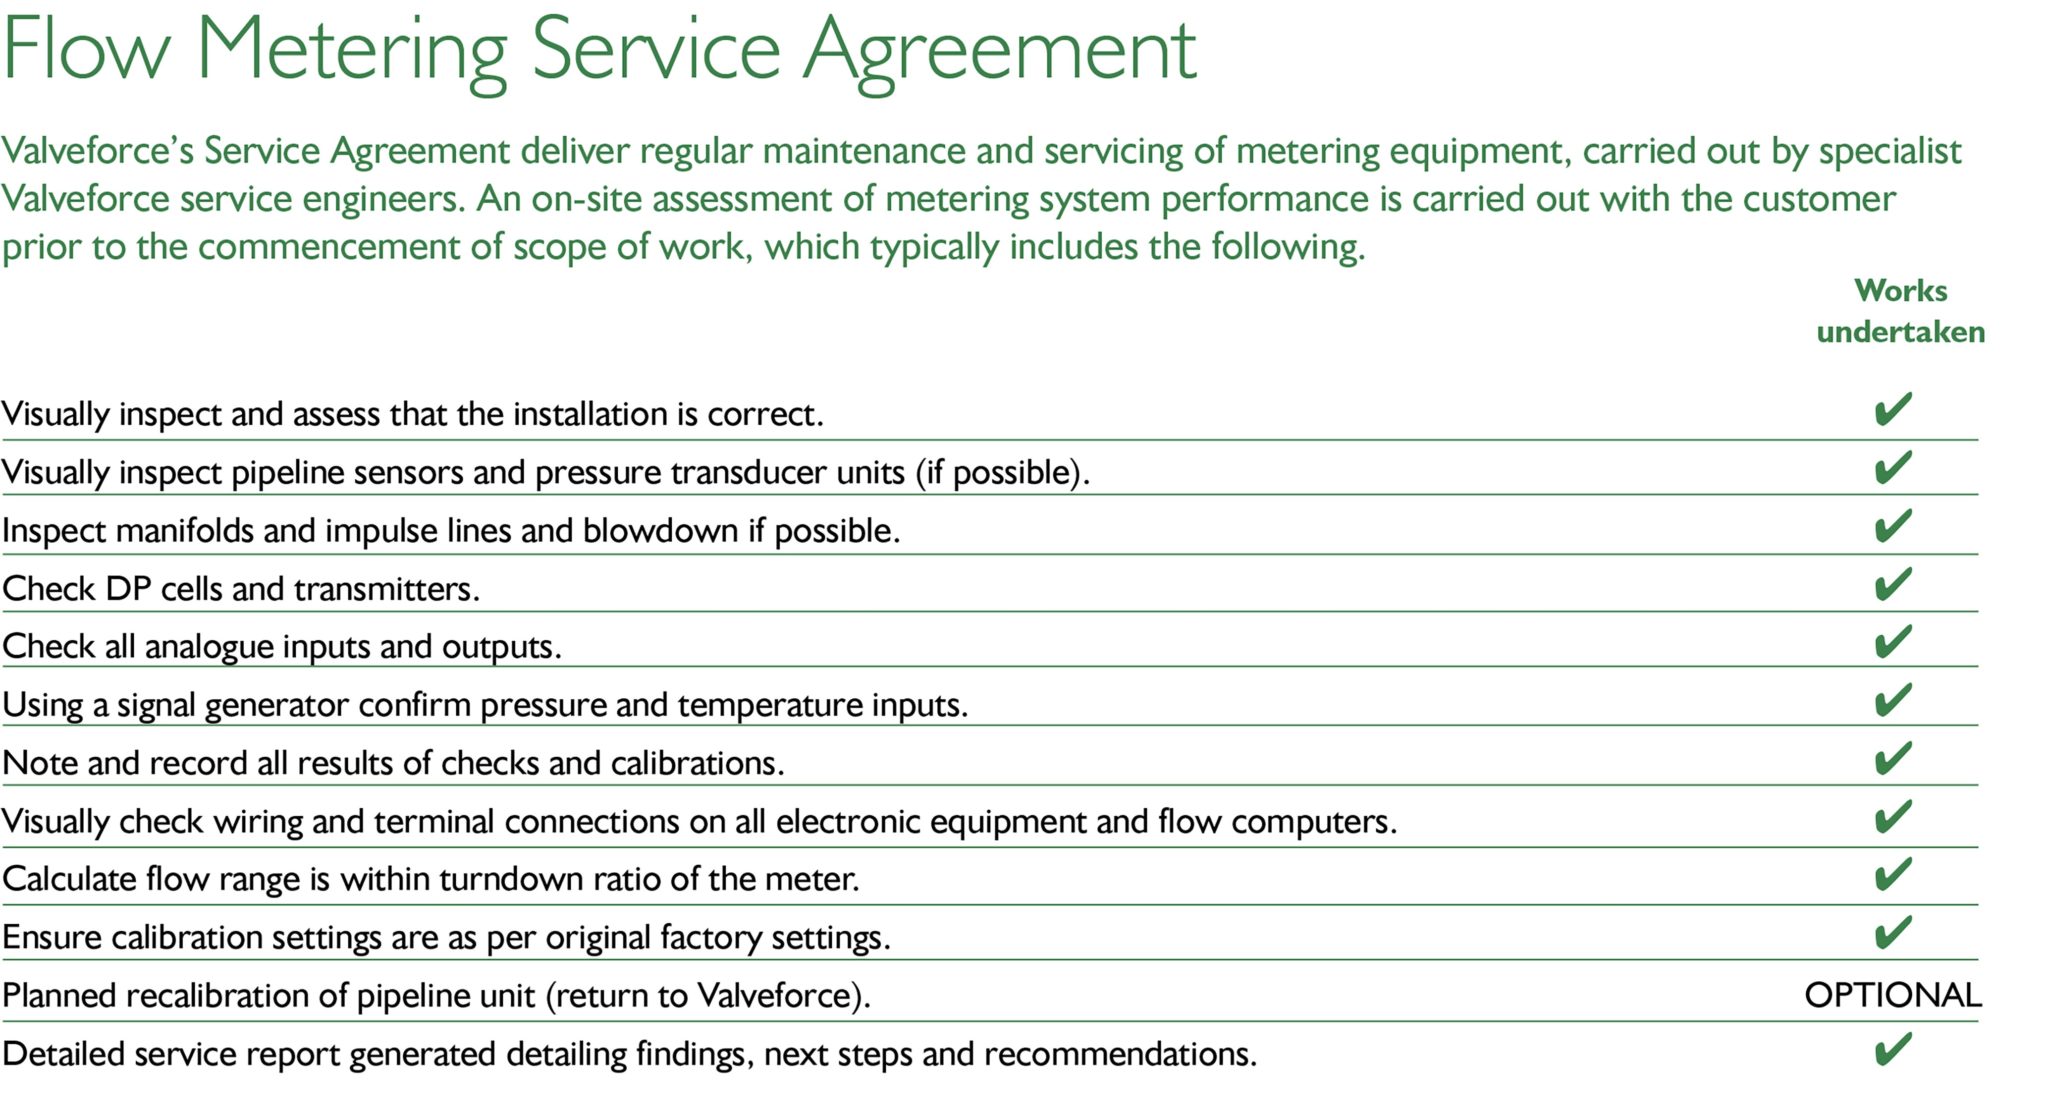 Flow Metering Service Agreement